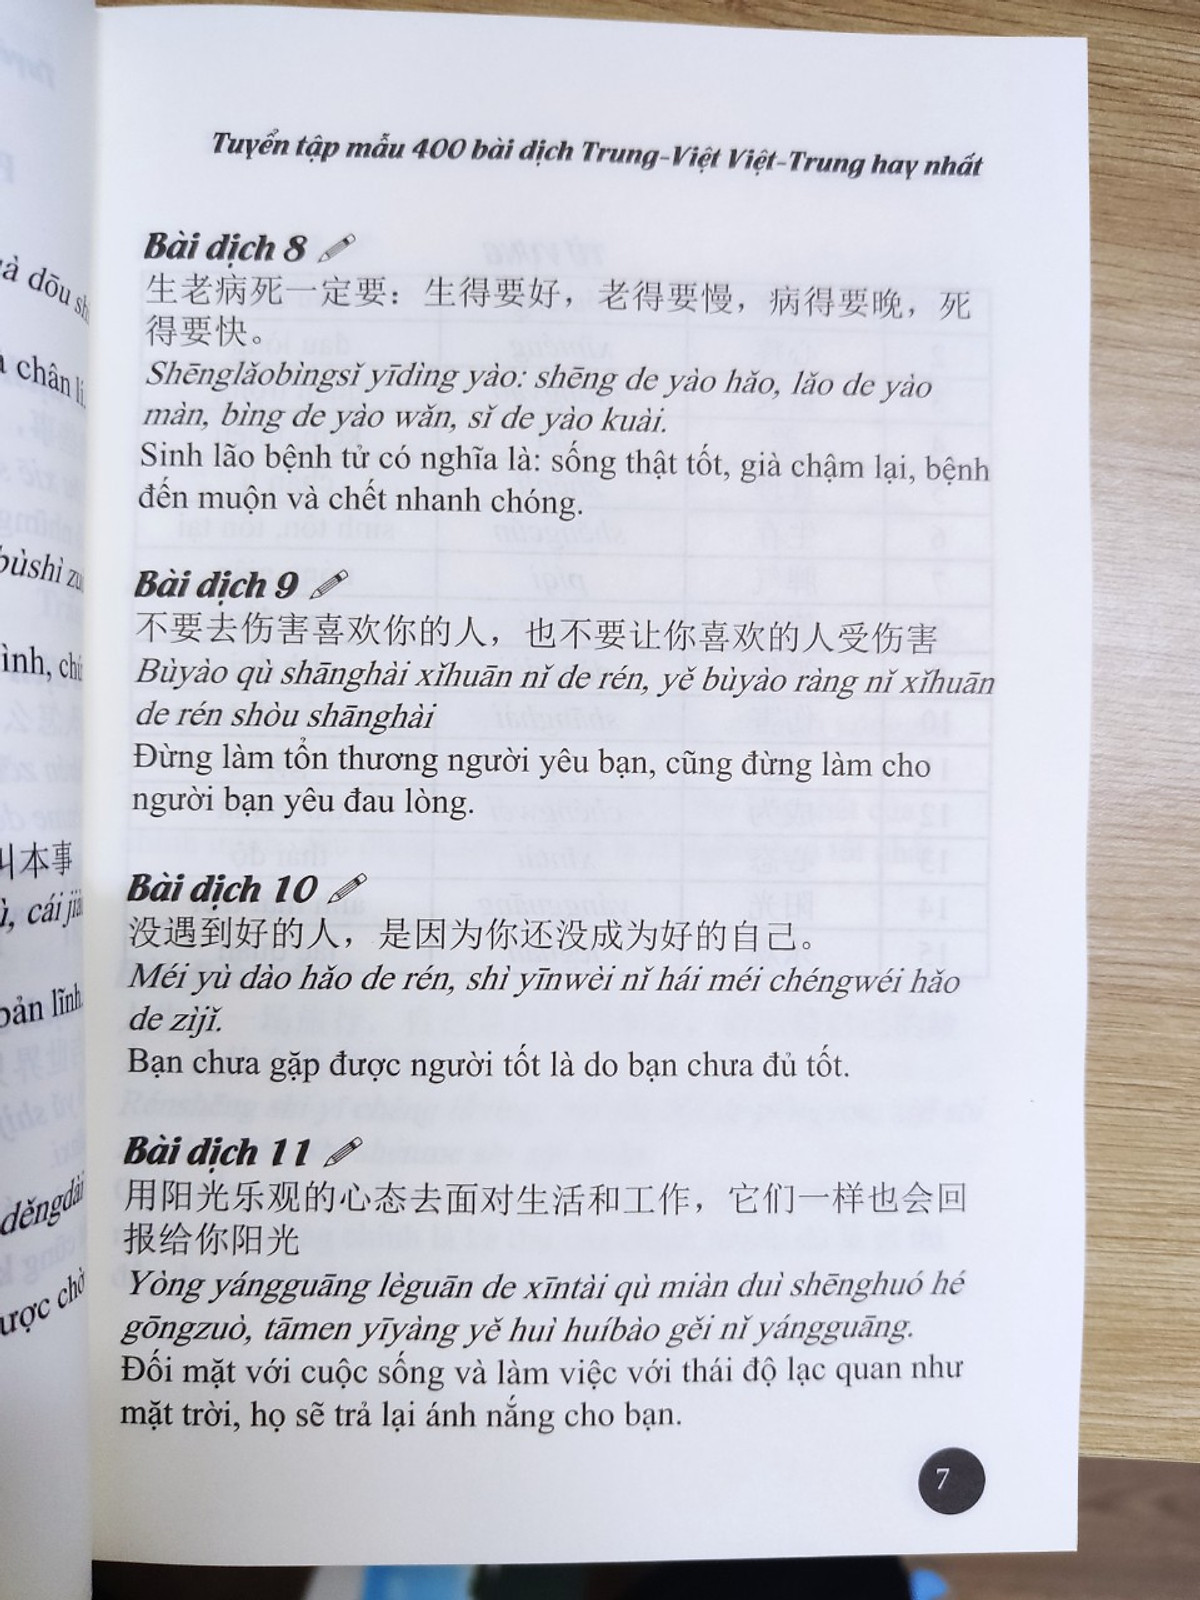 Tuyển tập 400 mẫu bài dịch Trung – Việt, Việt – Trung hay nhất phiên bản mới (Song ngữ Trung – Việt – có phiên âm, có Audio nghe, có QR Code trên tờ rơi kèm sách)